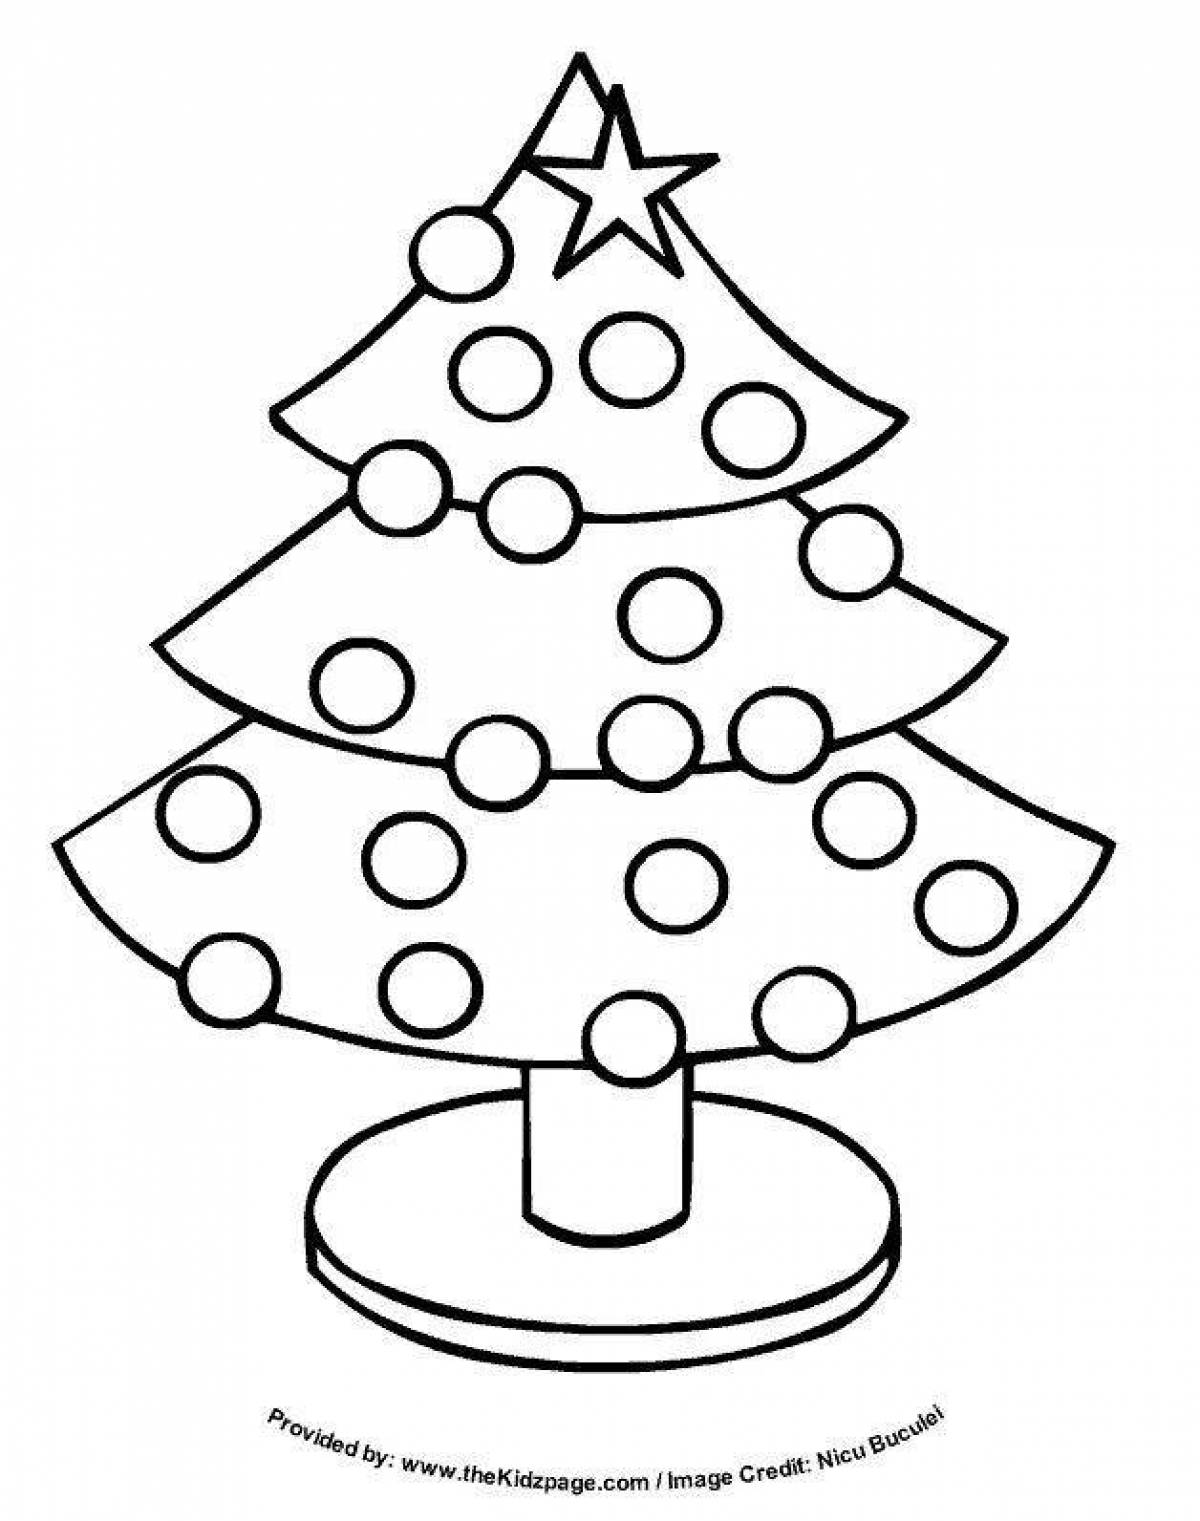 Christmas tree with balls #5